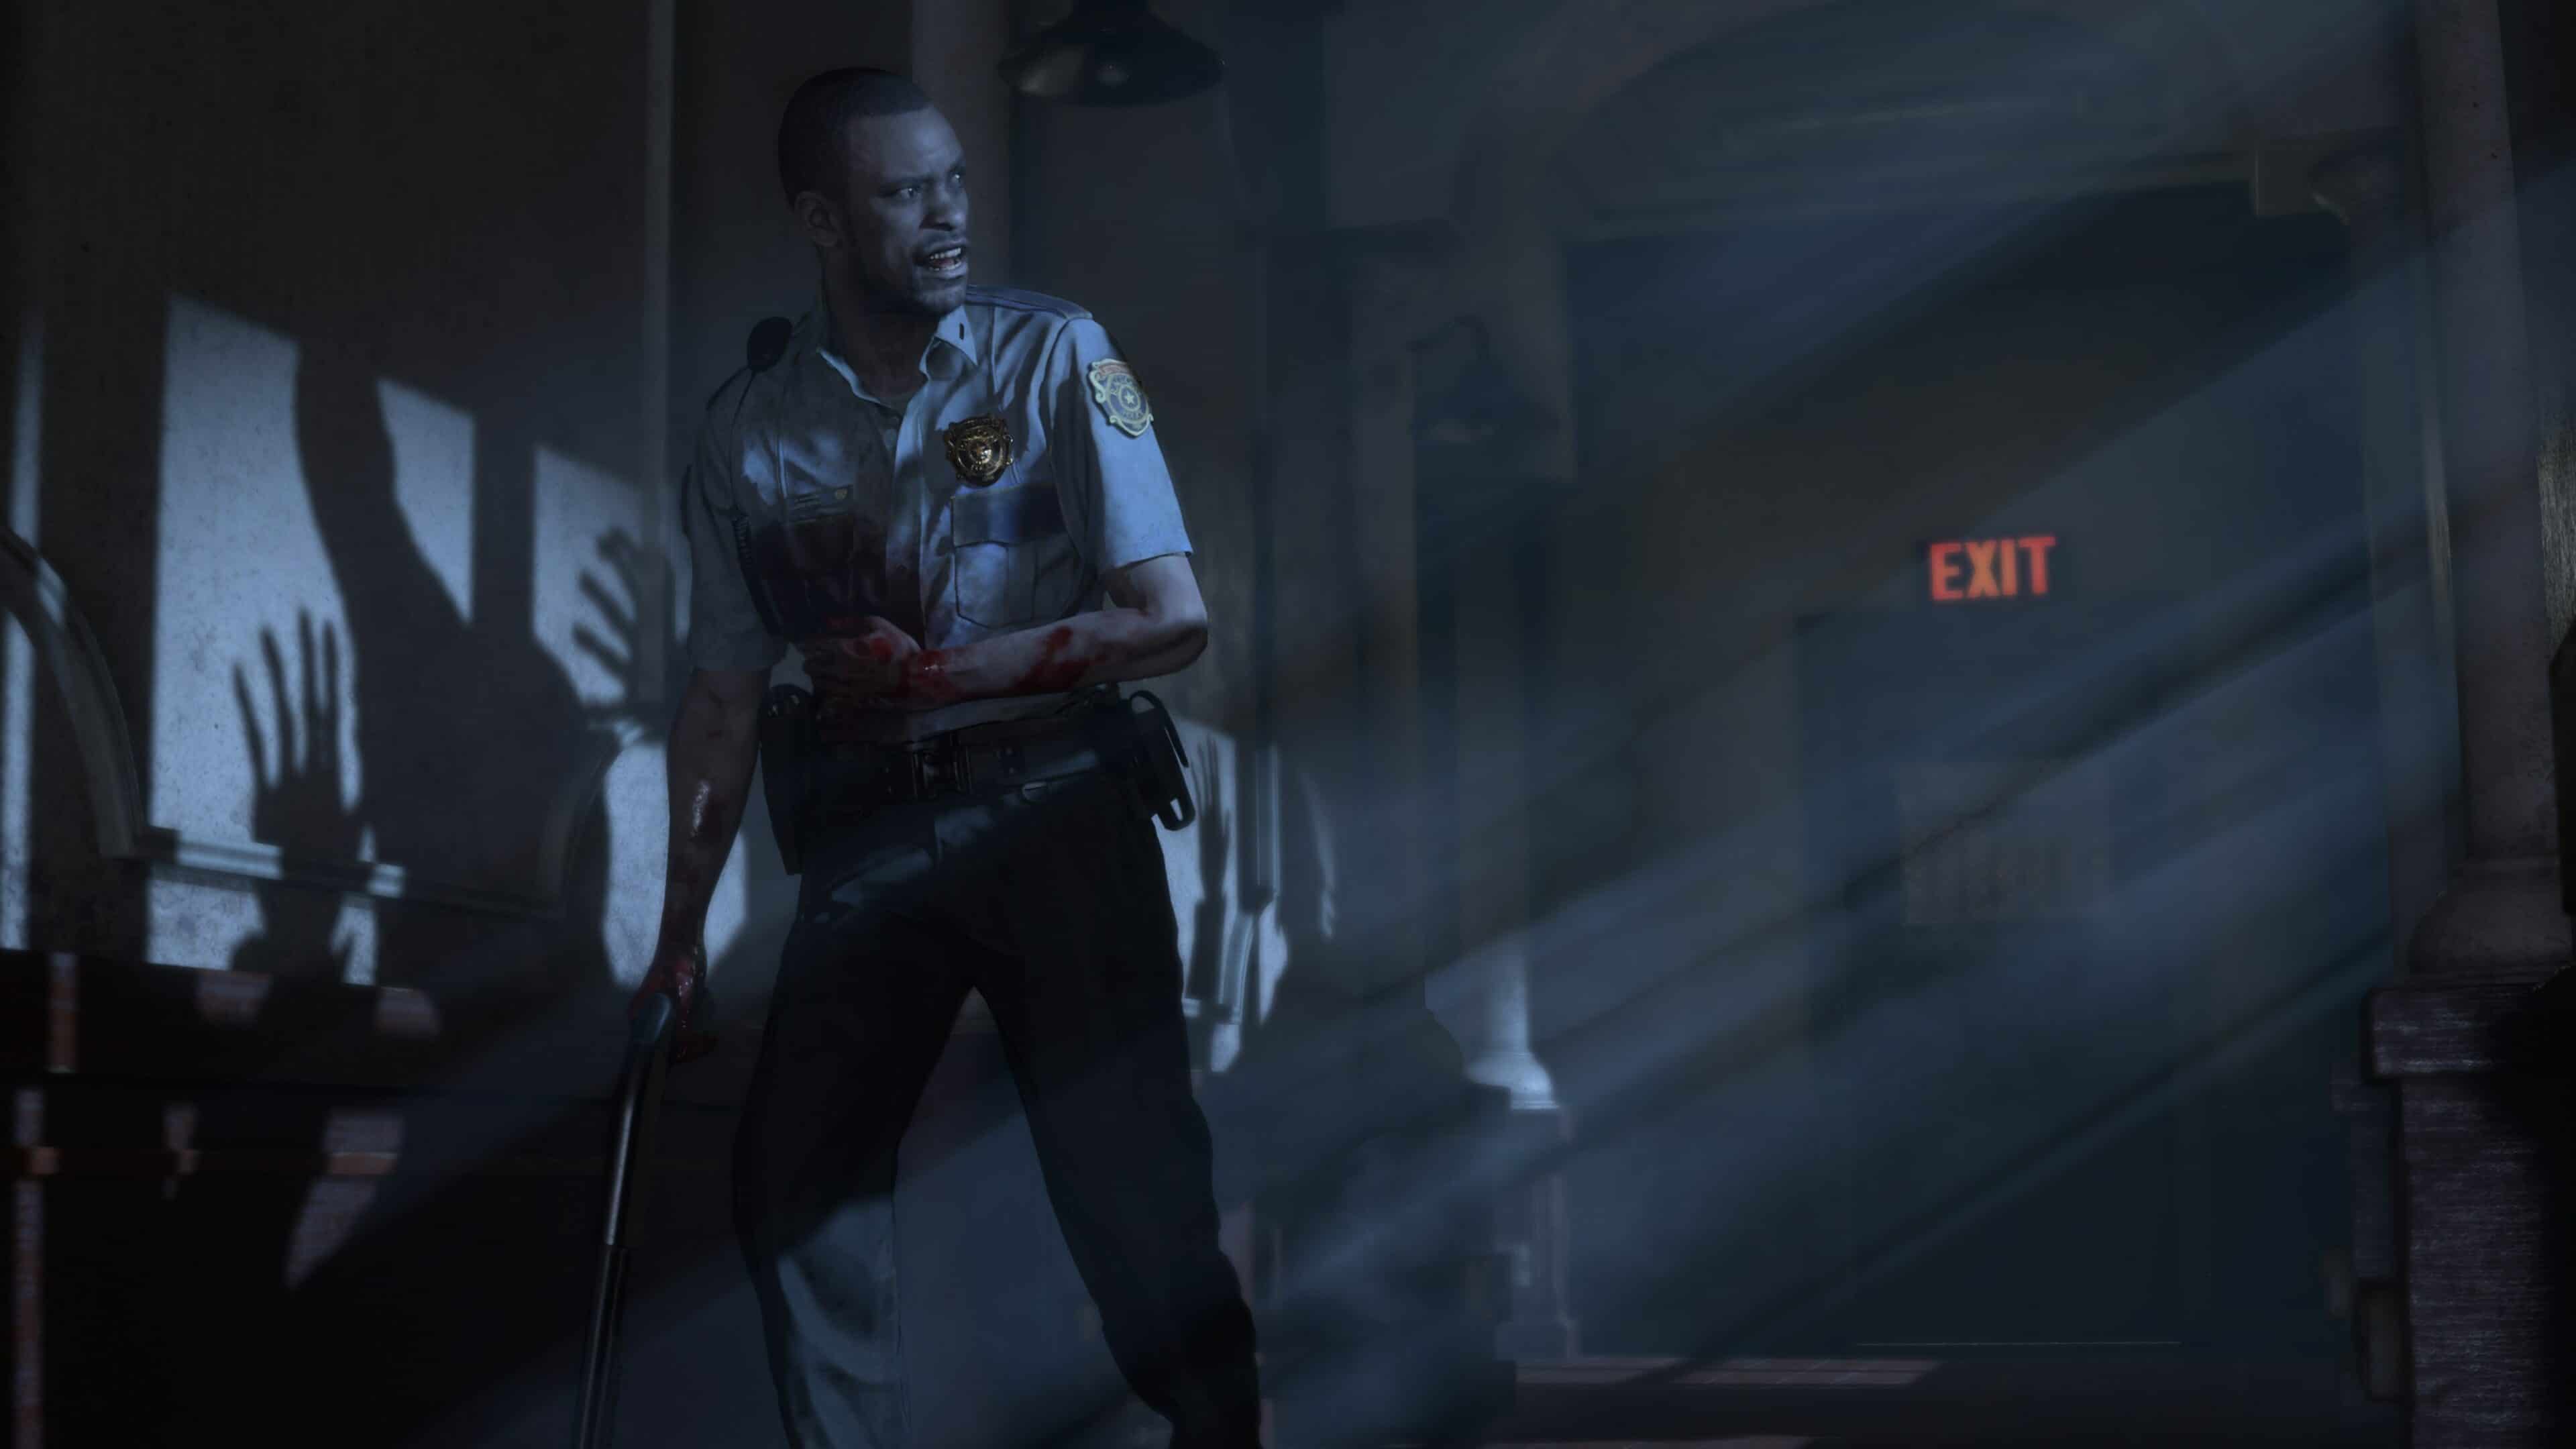 Revelan nuevo trailer de Resident Evil 2 presentando la nueva imagen de Ada Wong